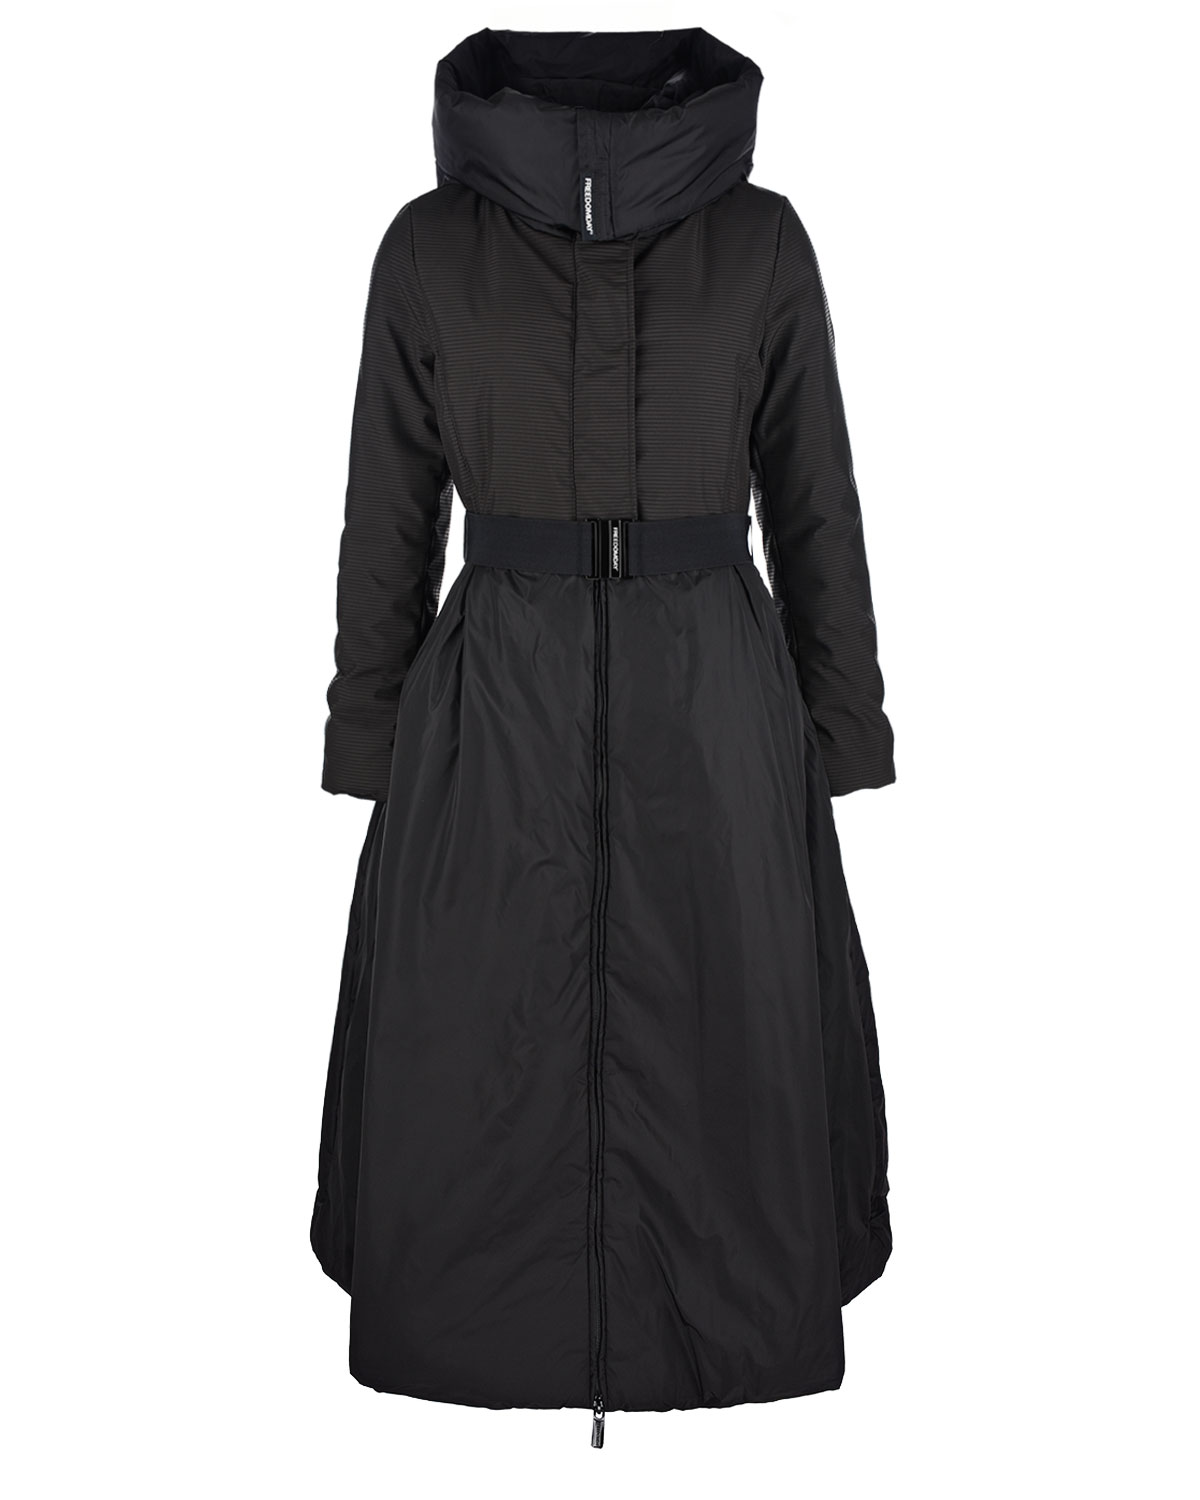 Приталенное черное пальто Freedomday, размер 40, цвет черный